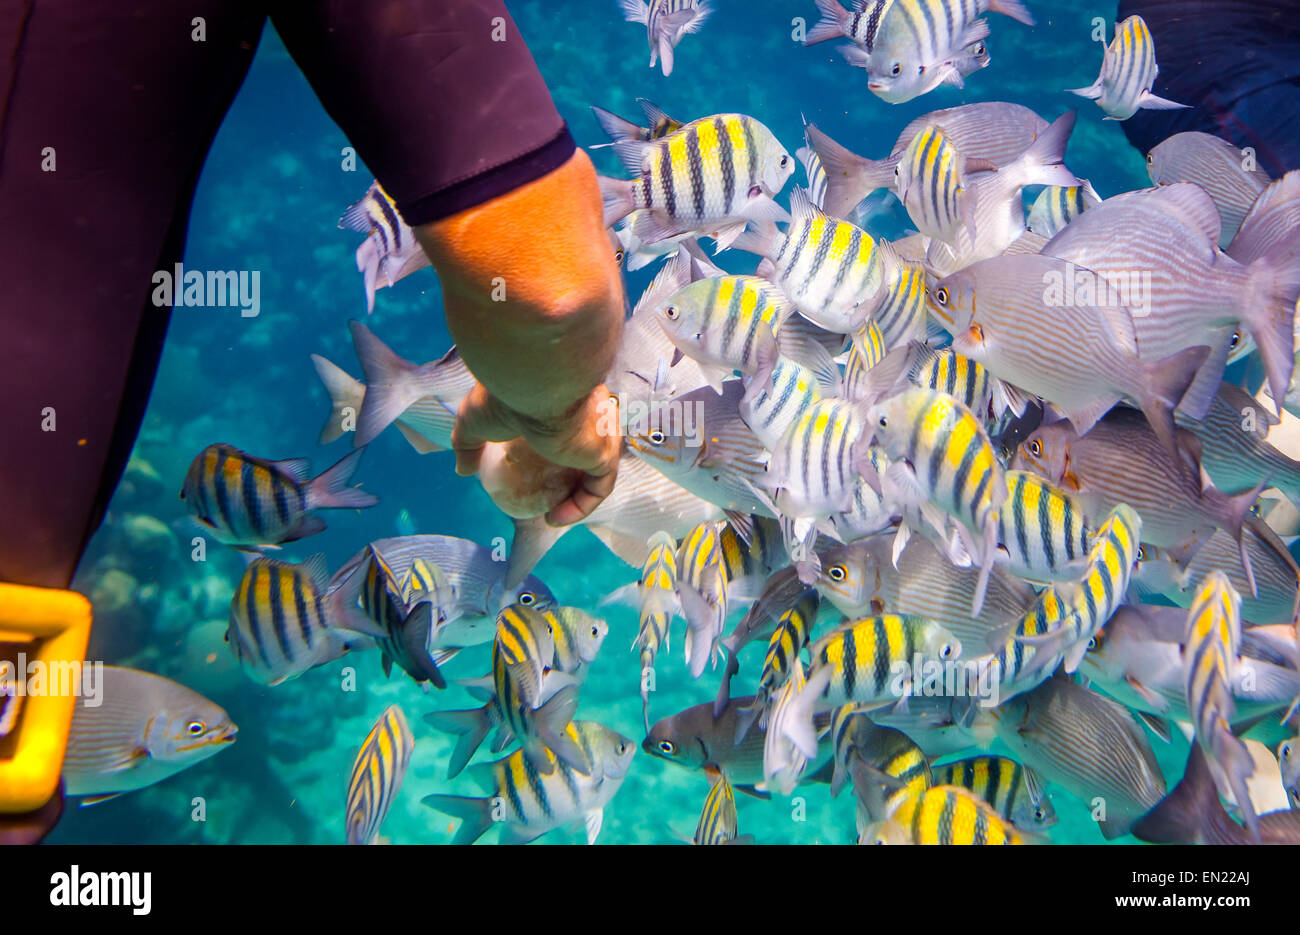 El hombre alimenta a los peces tropicales bajo el agua.Ocean Coral Reef. Advertencia - auténtico submarino de disparo en condiciones difíciles. A l Foto de stock